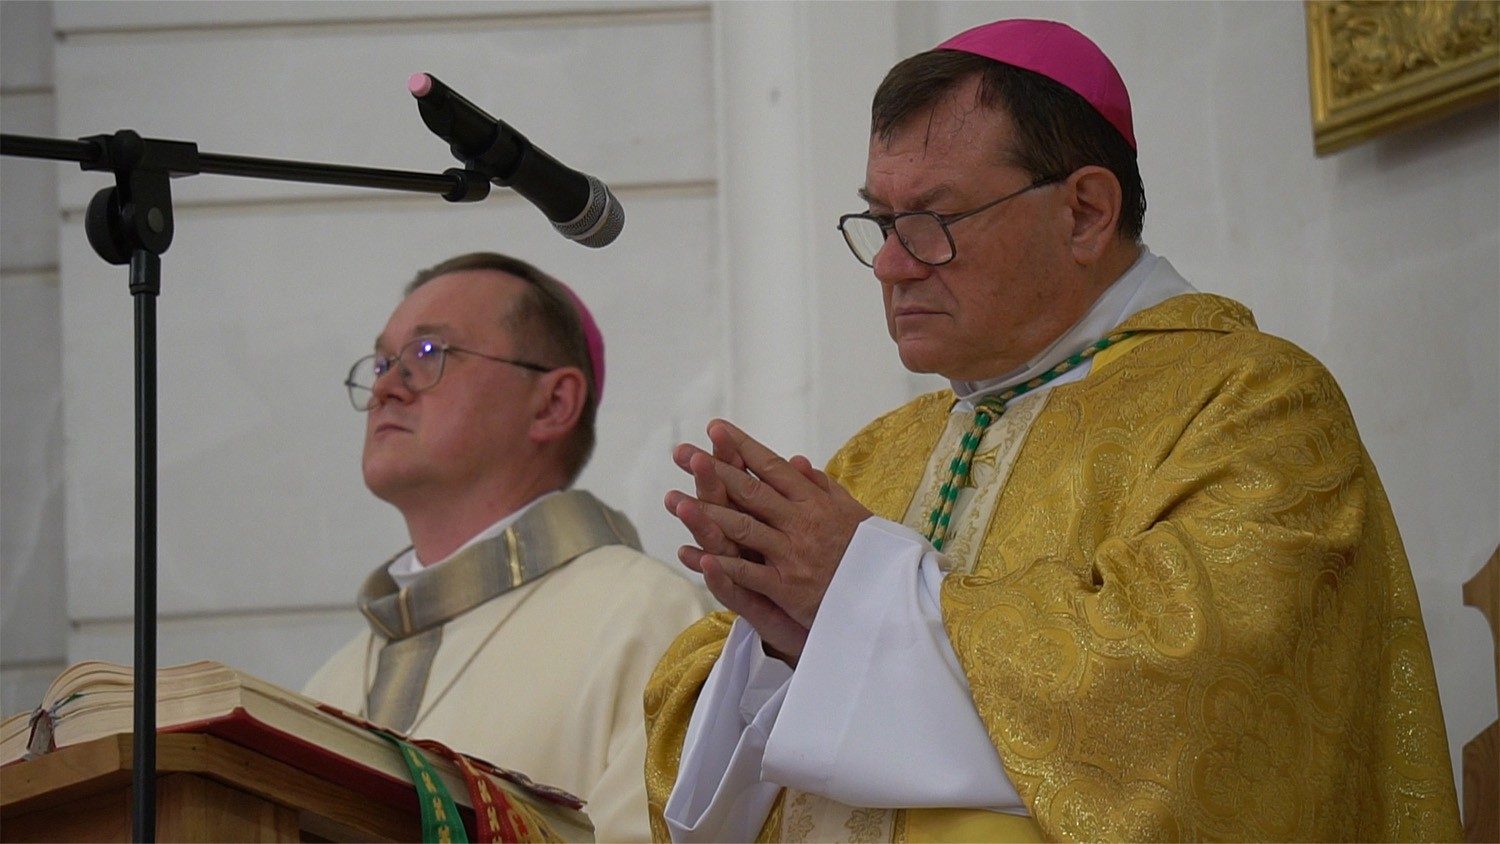 Архиепископ Павел Пецци: нужно терпеливо продолжать диалог с Русской Православной Церковью